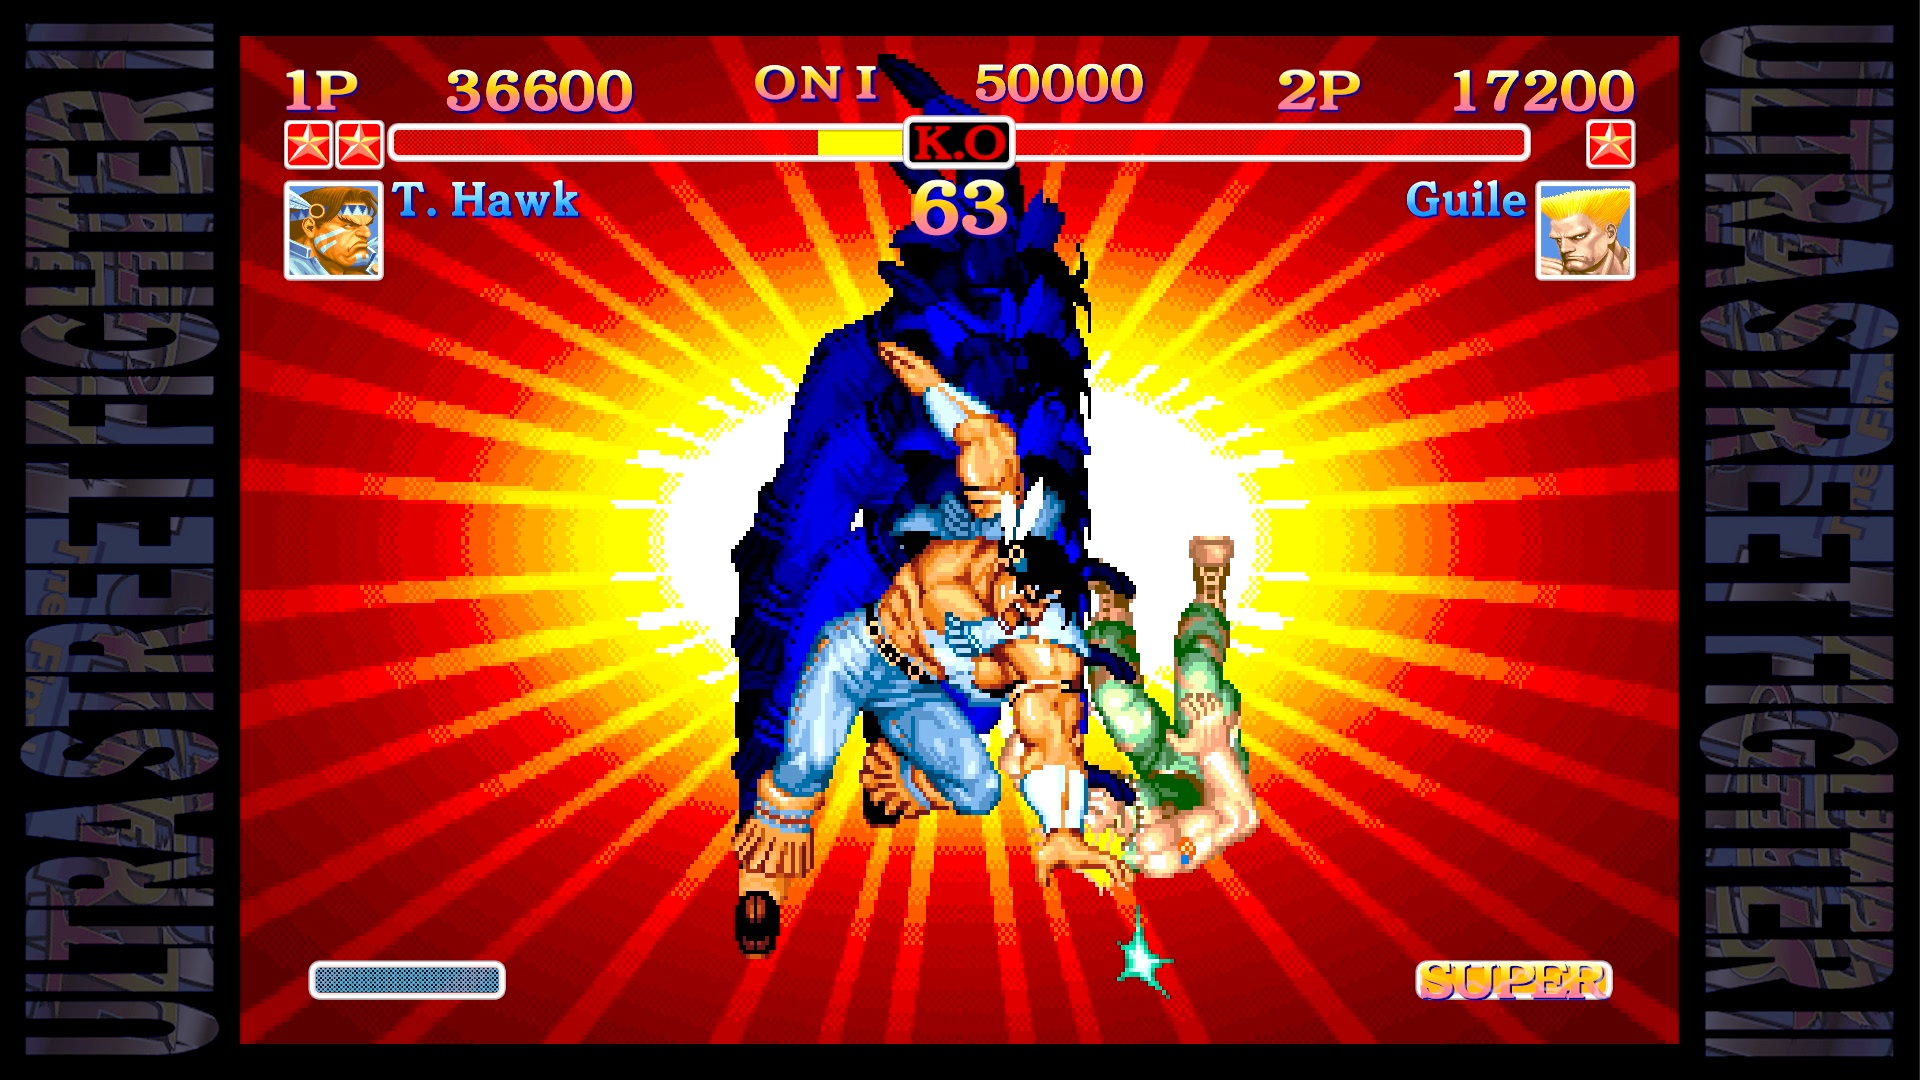 Ultra Street Fighter II Super Move